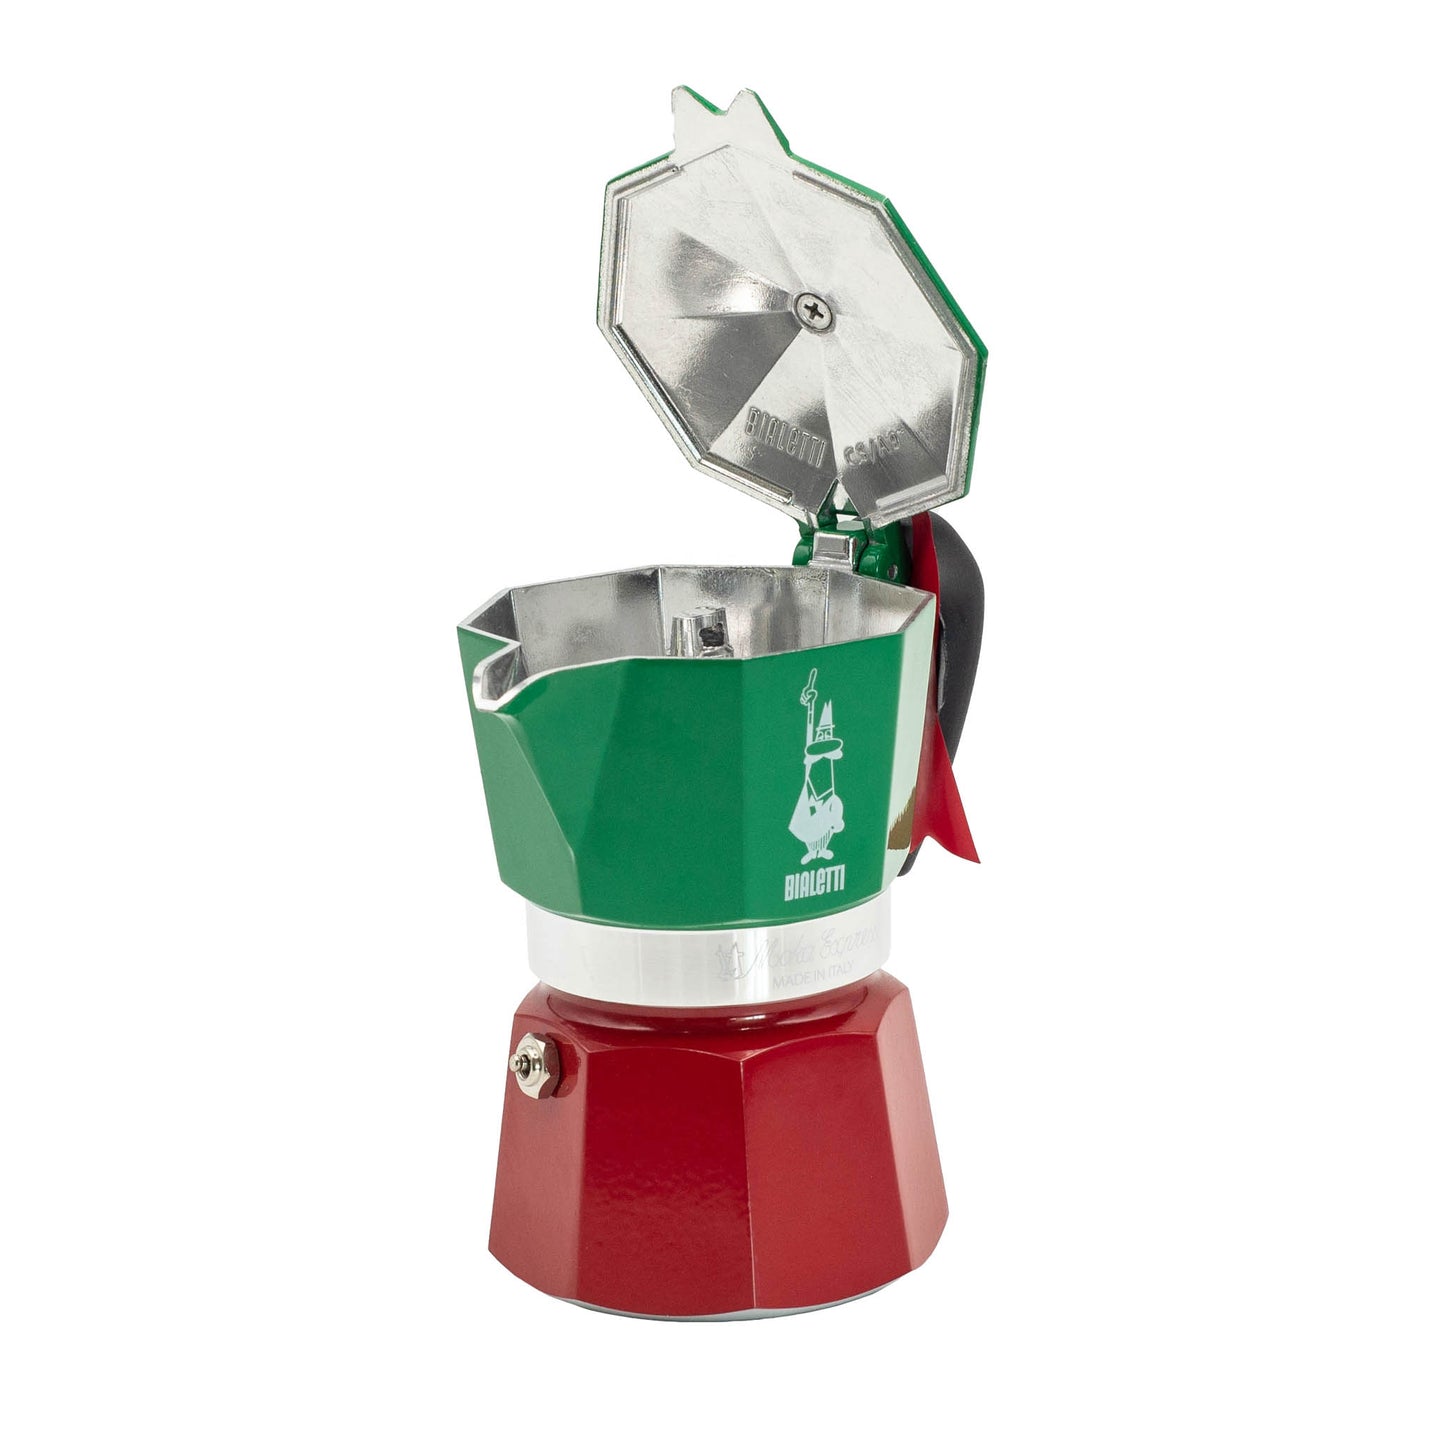 Bialetti Moka stove top espresso coffee maker, Green and Red Italia Model. 